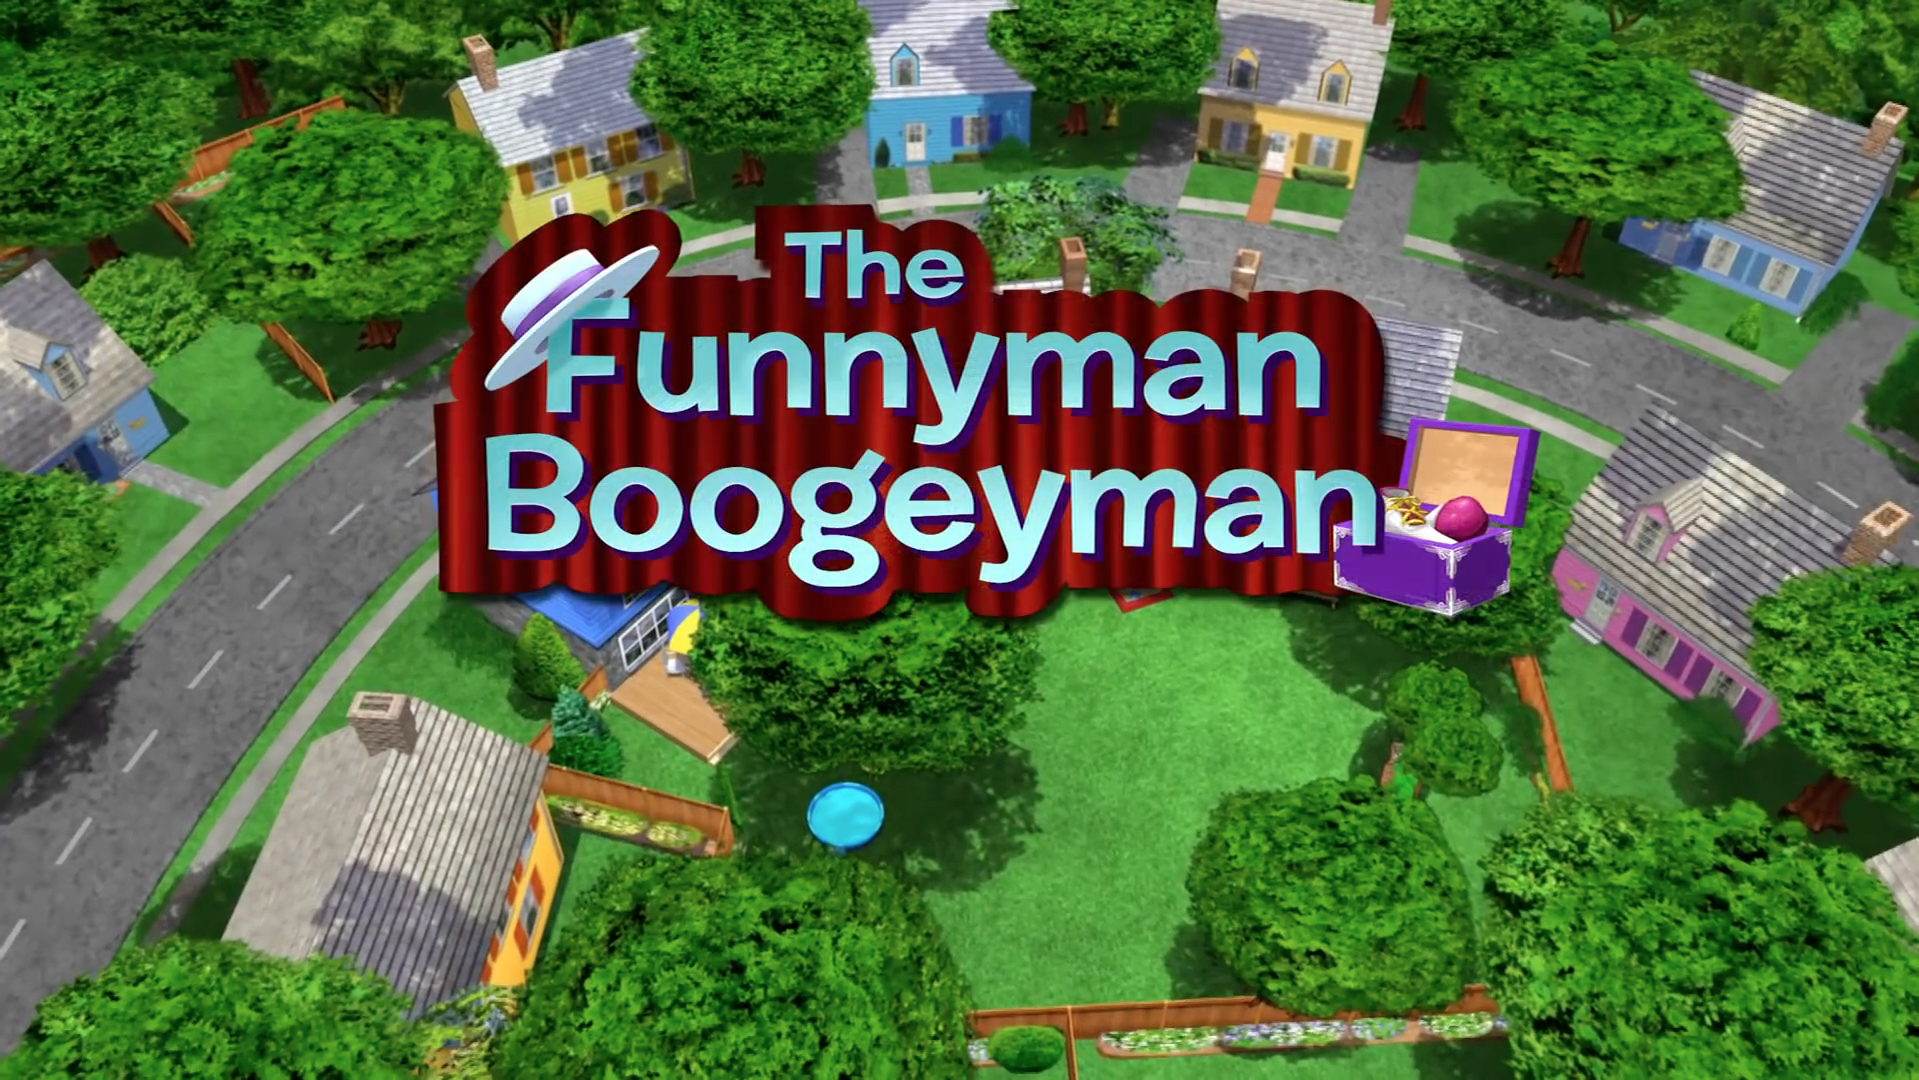 The Funnyman Boogeyman | The Backyardigans Wiki | Fandom